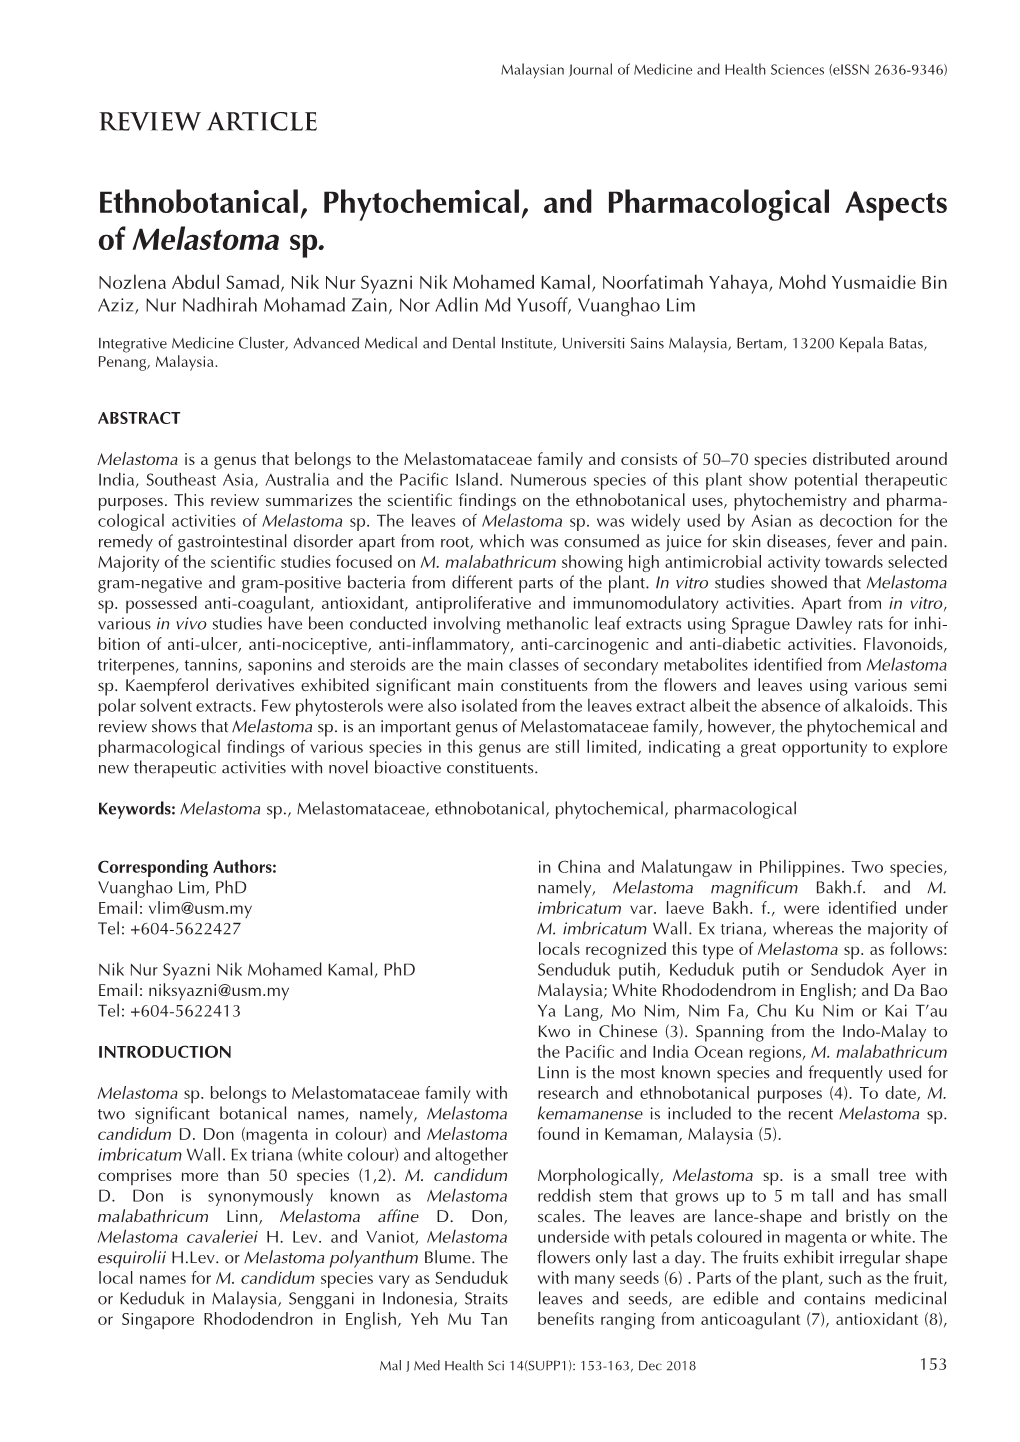 Ethnobotanical, Phytochemical, and Pharmacological Aspects of Melastoma Sp